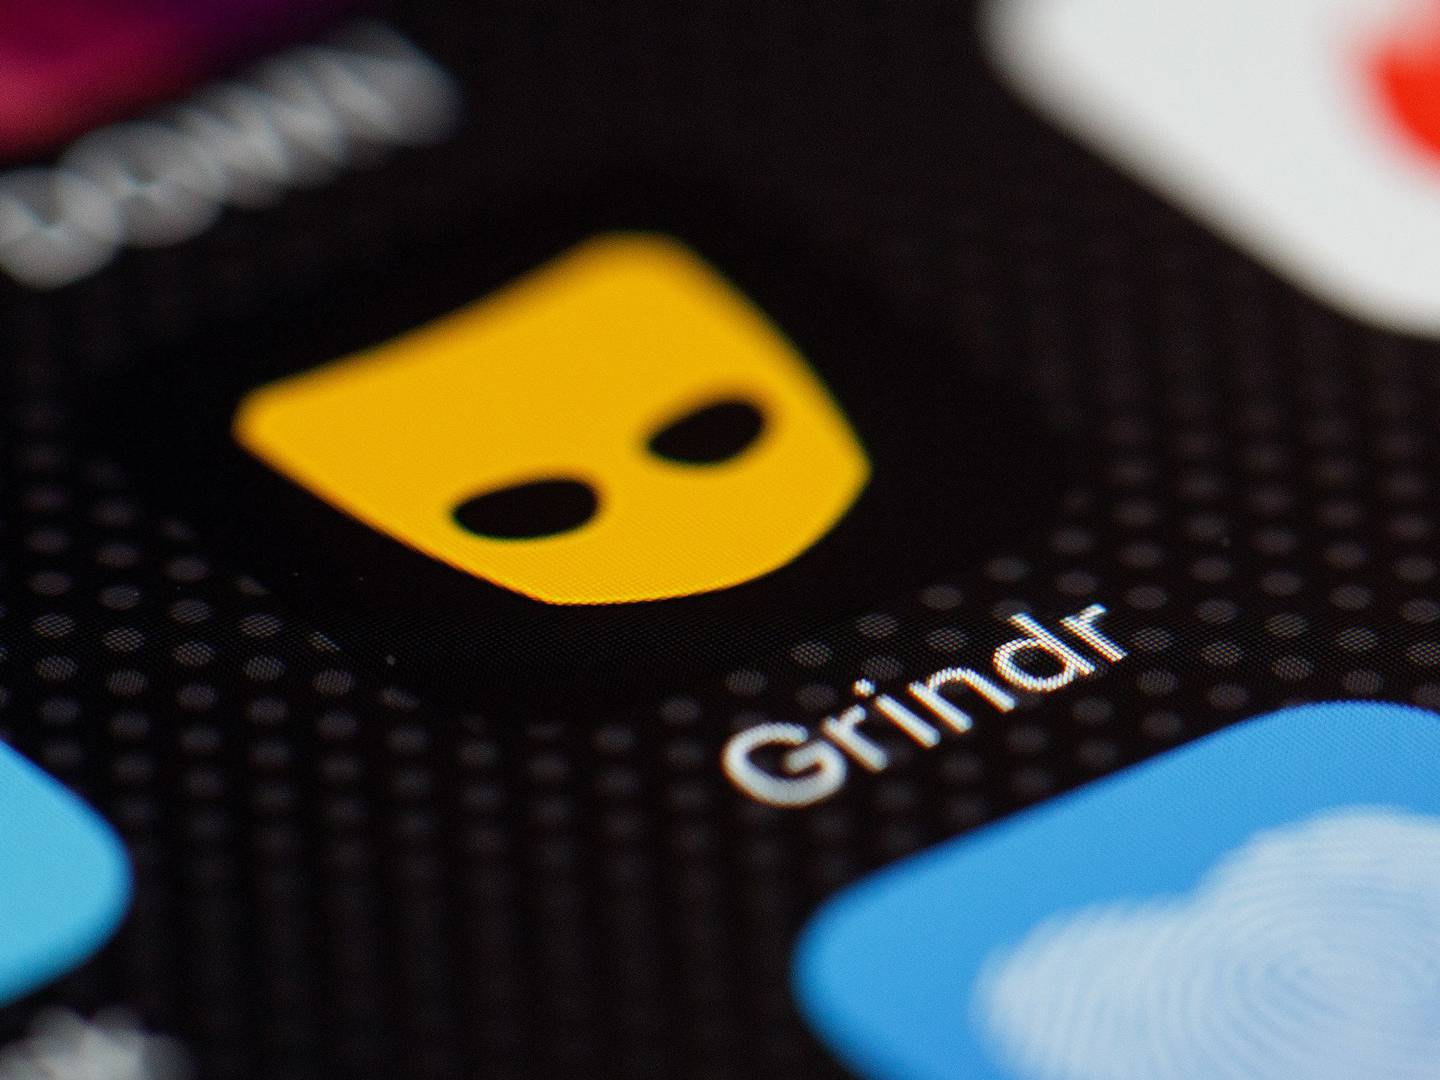 Logotipo de la aplicación "Grindr" se ve entre otras aplicaciones de citas en la pantalla de un teléfono celular el 24 de noviembre de 2016 en Londres, Inglaterra.